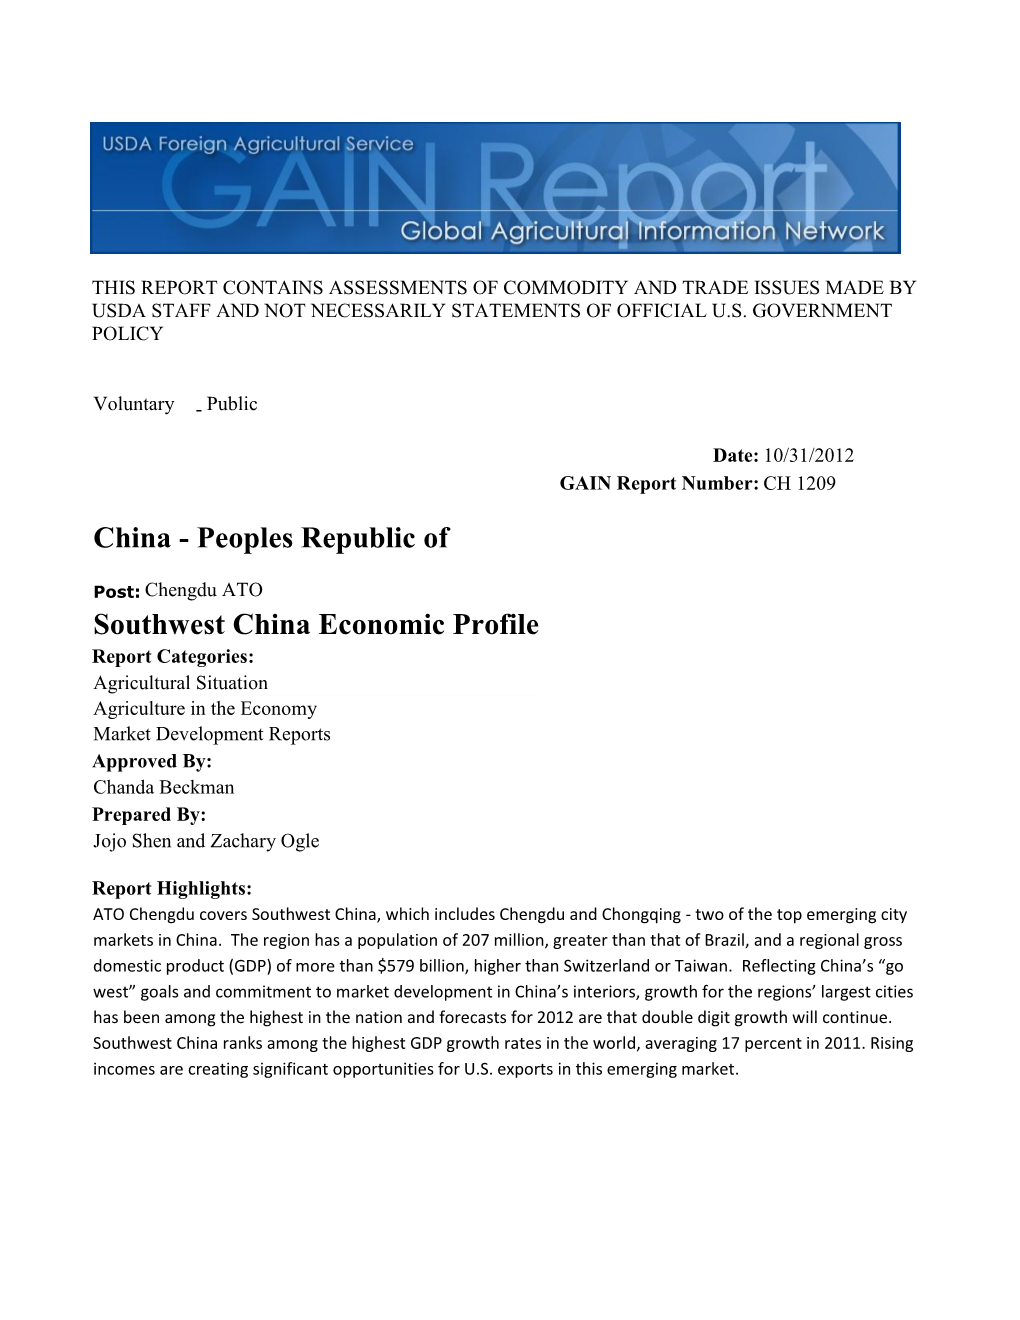 Southwest China Economic Profile China